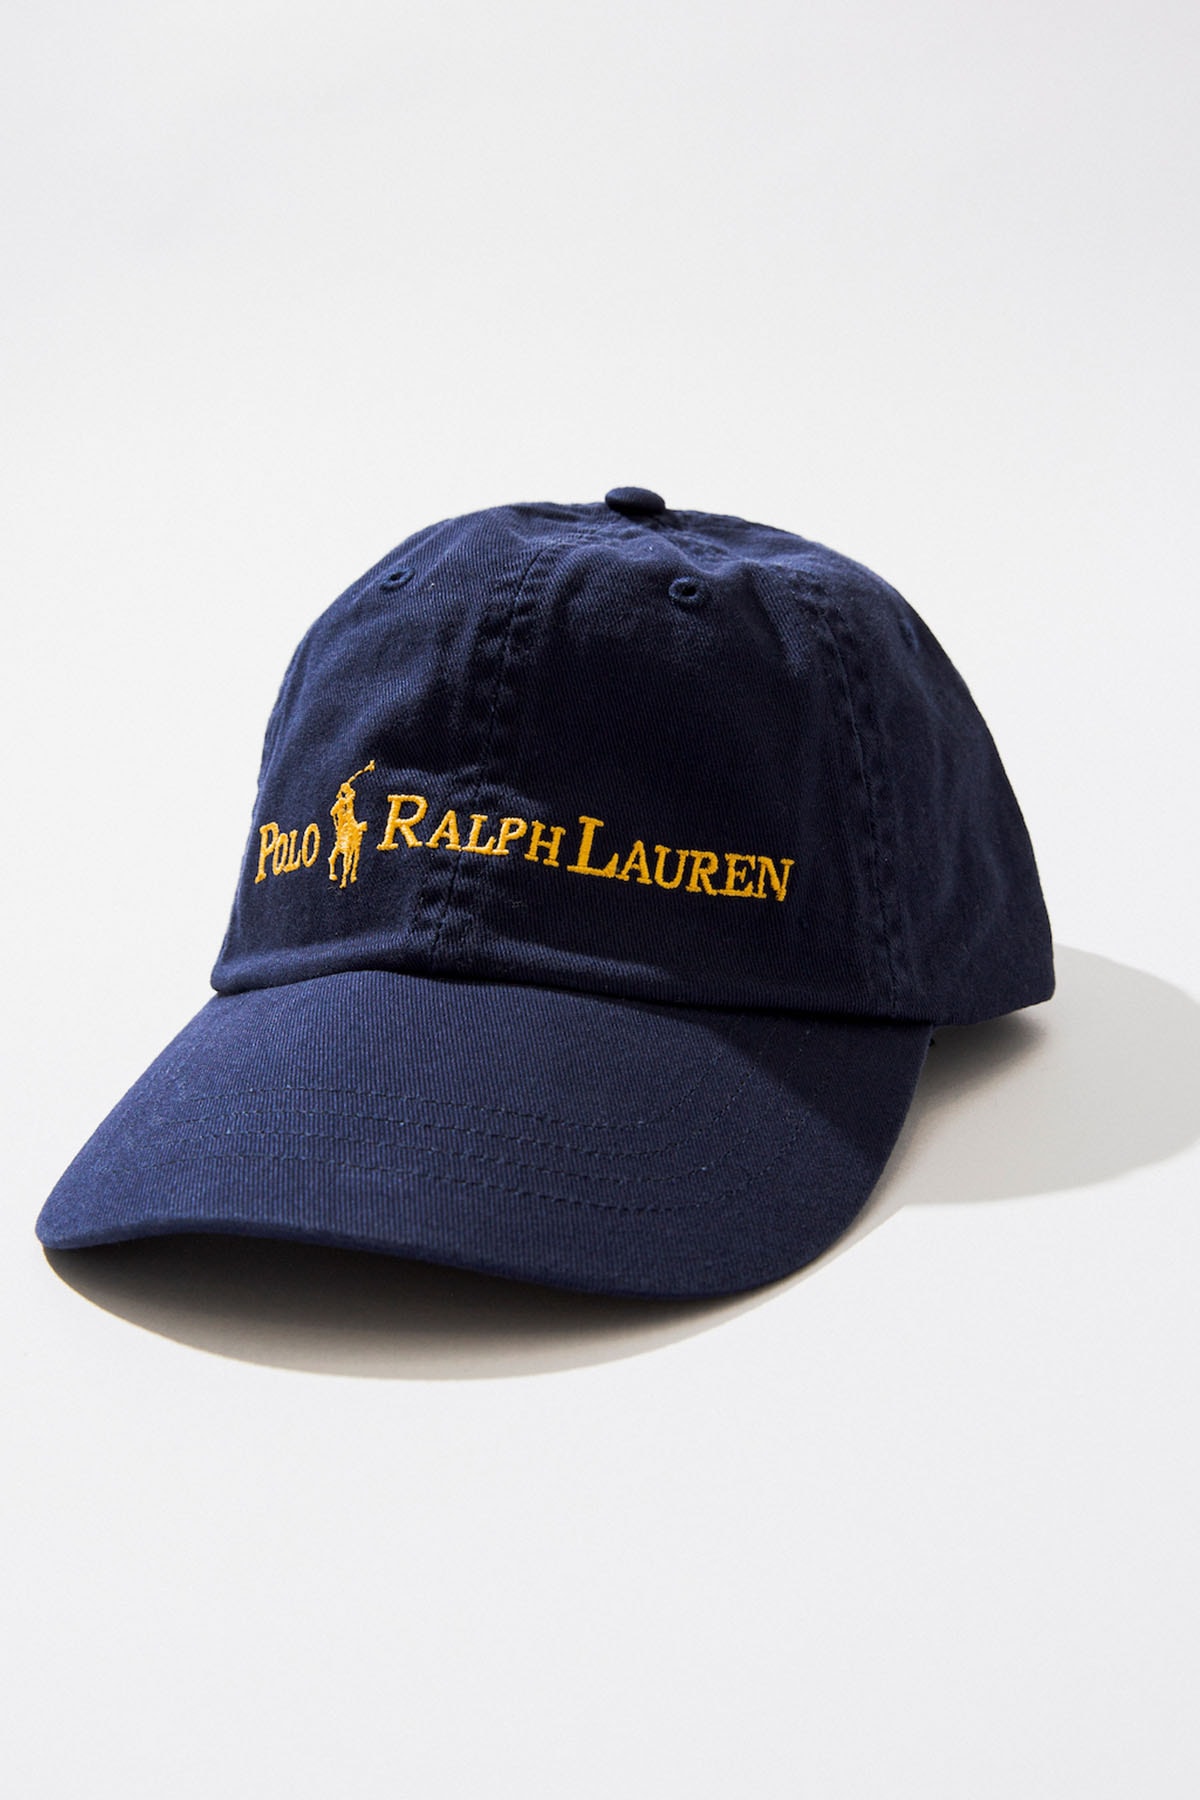 ビームスがポロラルフローレンに別注したロゴ・コレクション第2弾がリリース  BEAMS releases Polo Ralph Lauren's bespoke navy and gold logo collection.